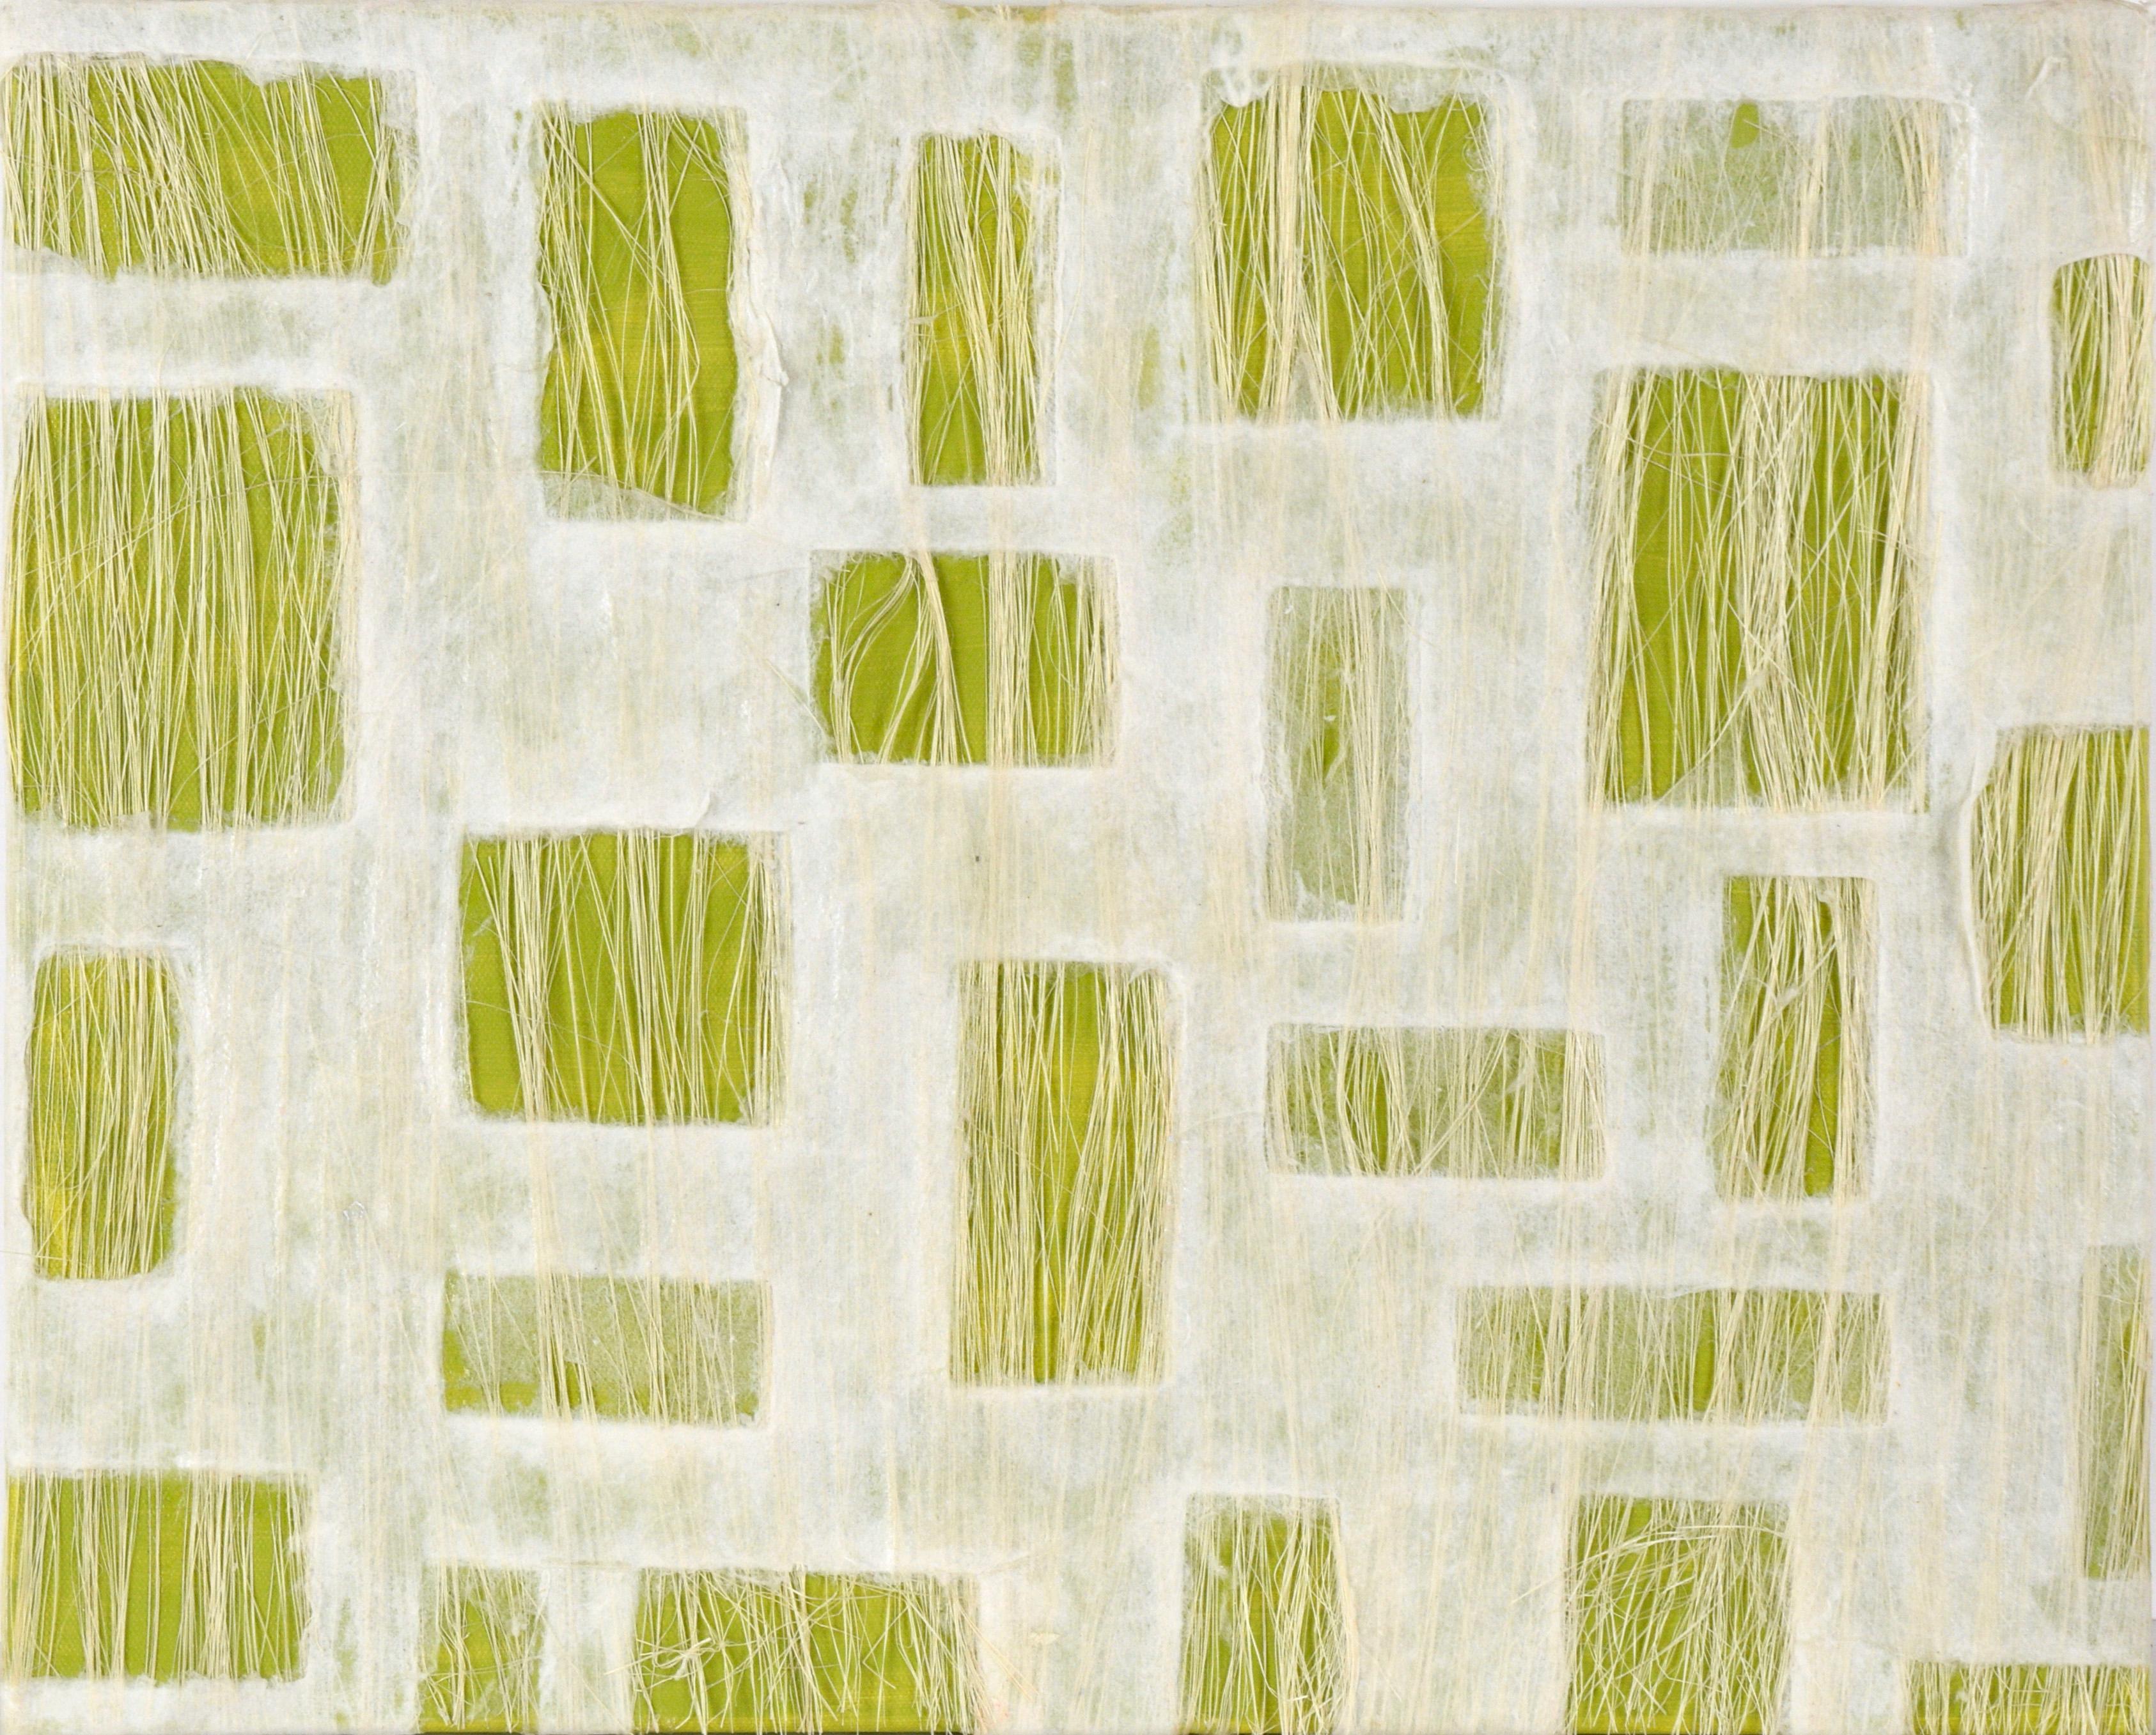 Unknown Abstract Painting – Abstrakte geometrische Komposition aus Papier, Fasern und Acryl auf Leinwand (Grün)